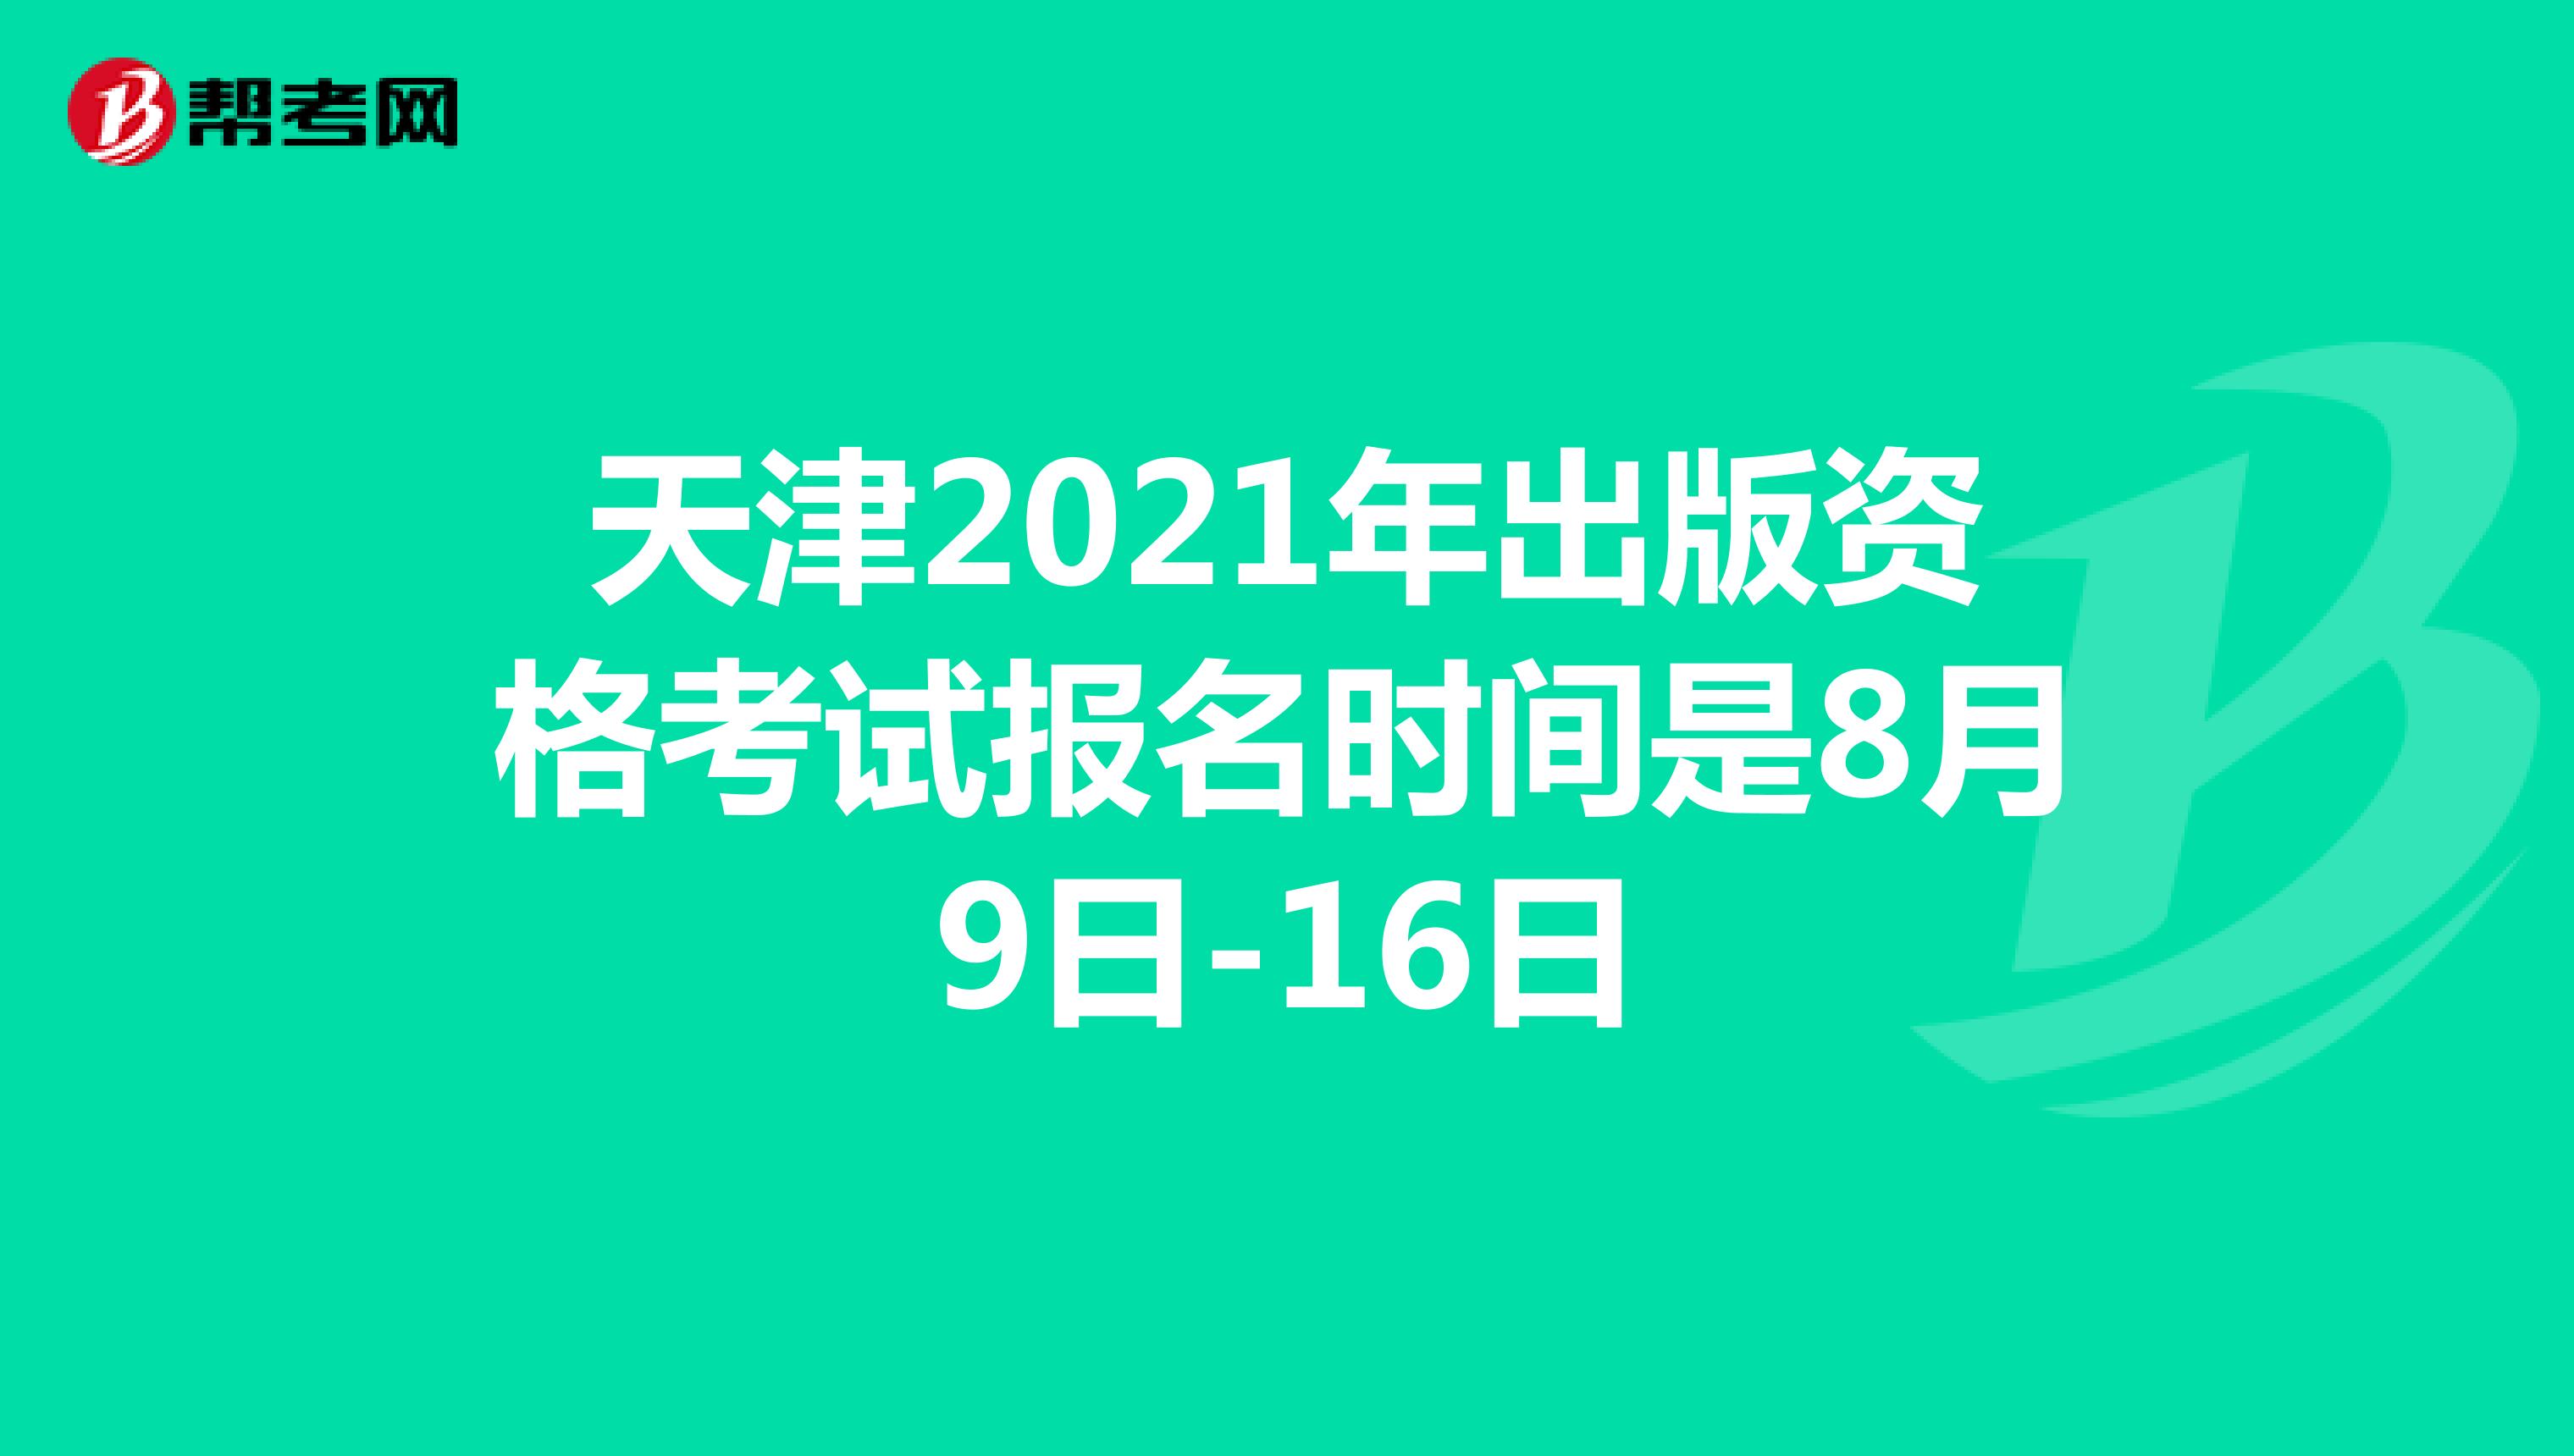 天津2021年出版资格考试报名时间是8月9日-16日